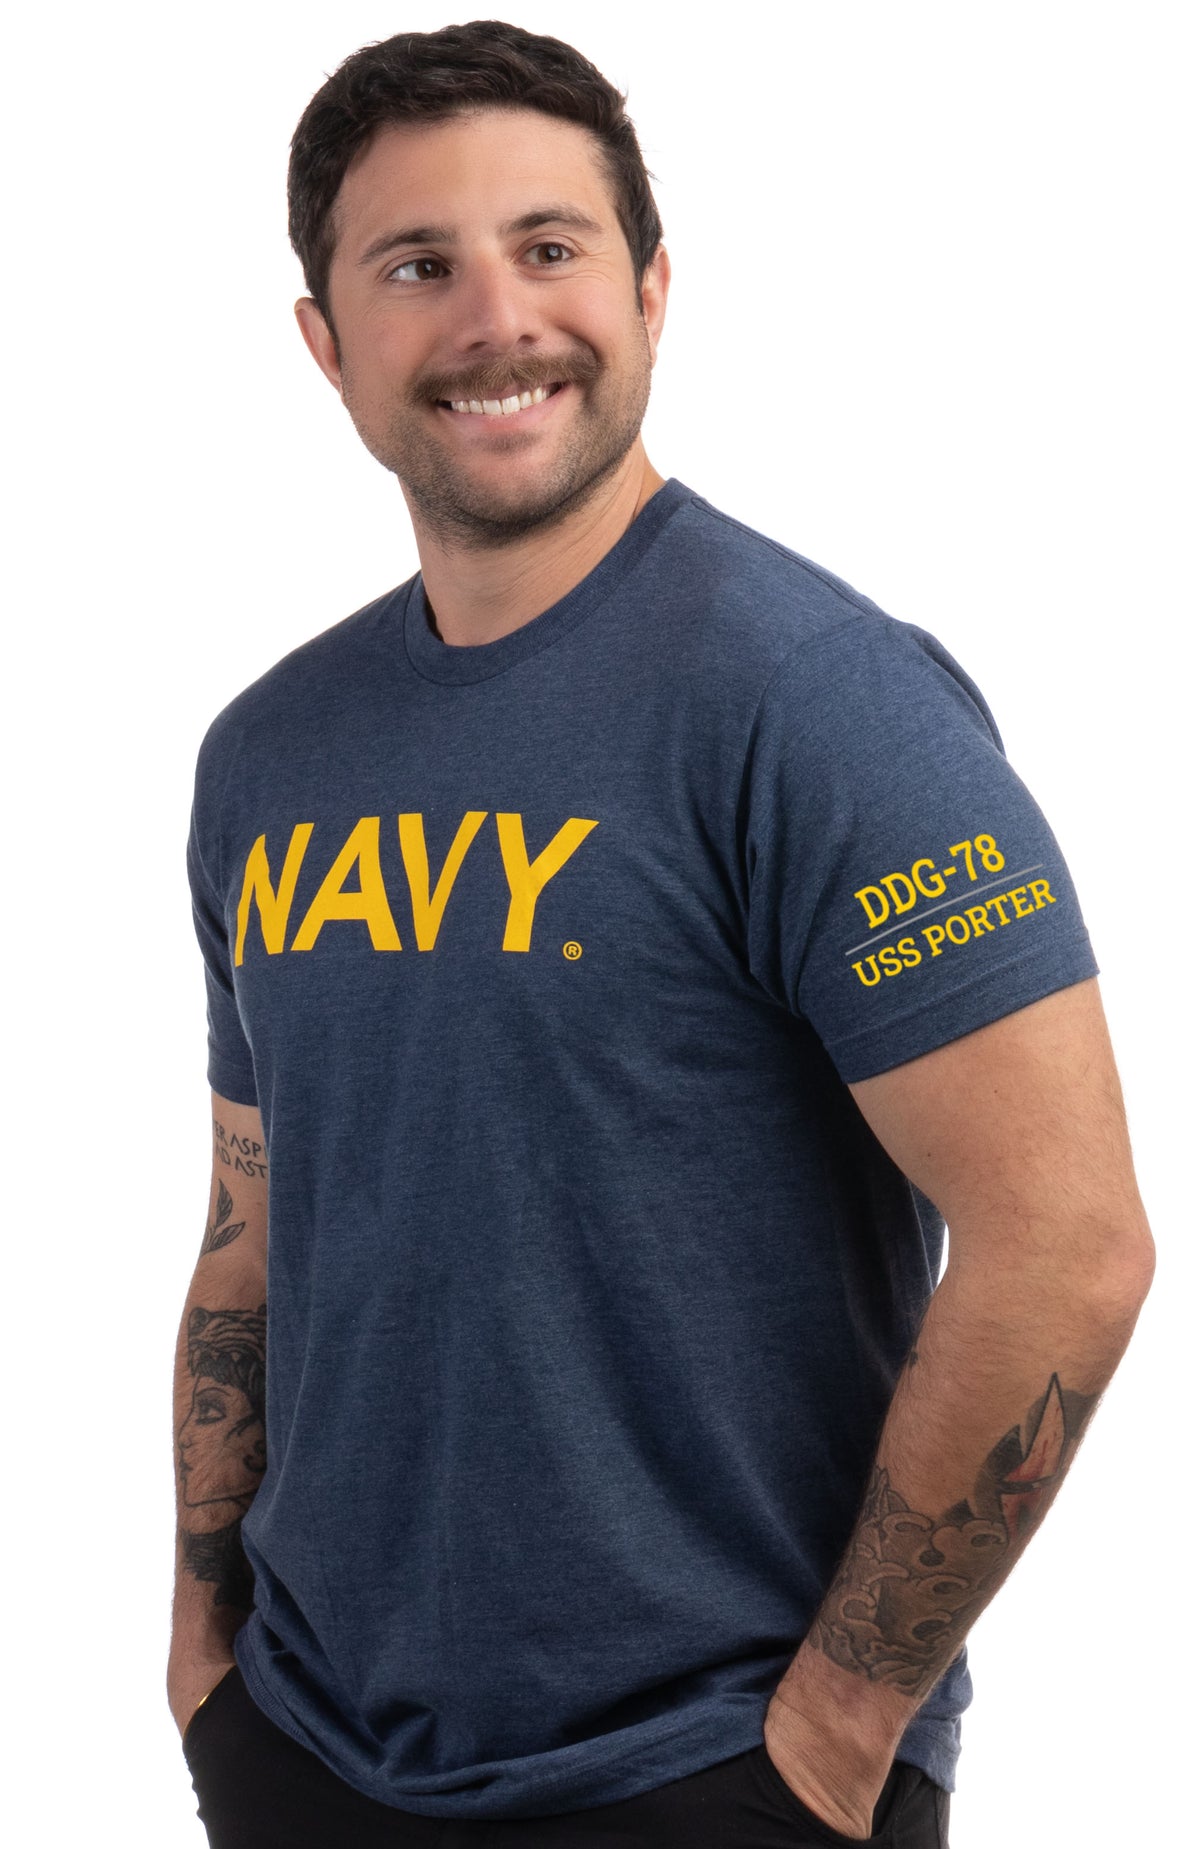 USS Porter, DDG-78 | U.S. Navy Sailor Veteran USN United States Naval T-shirt for Men Women